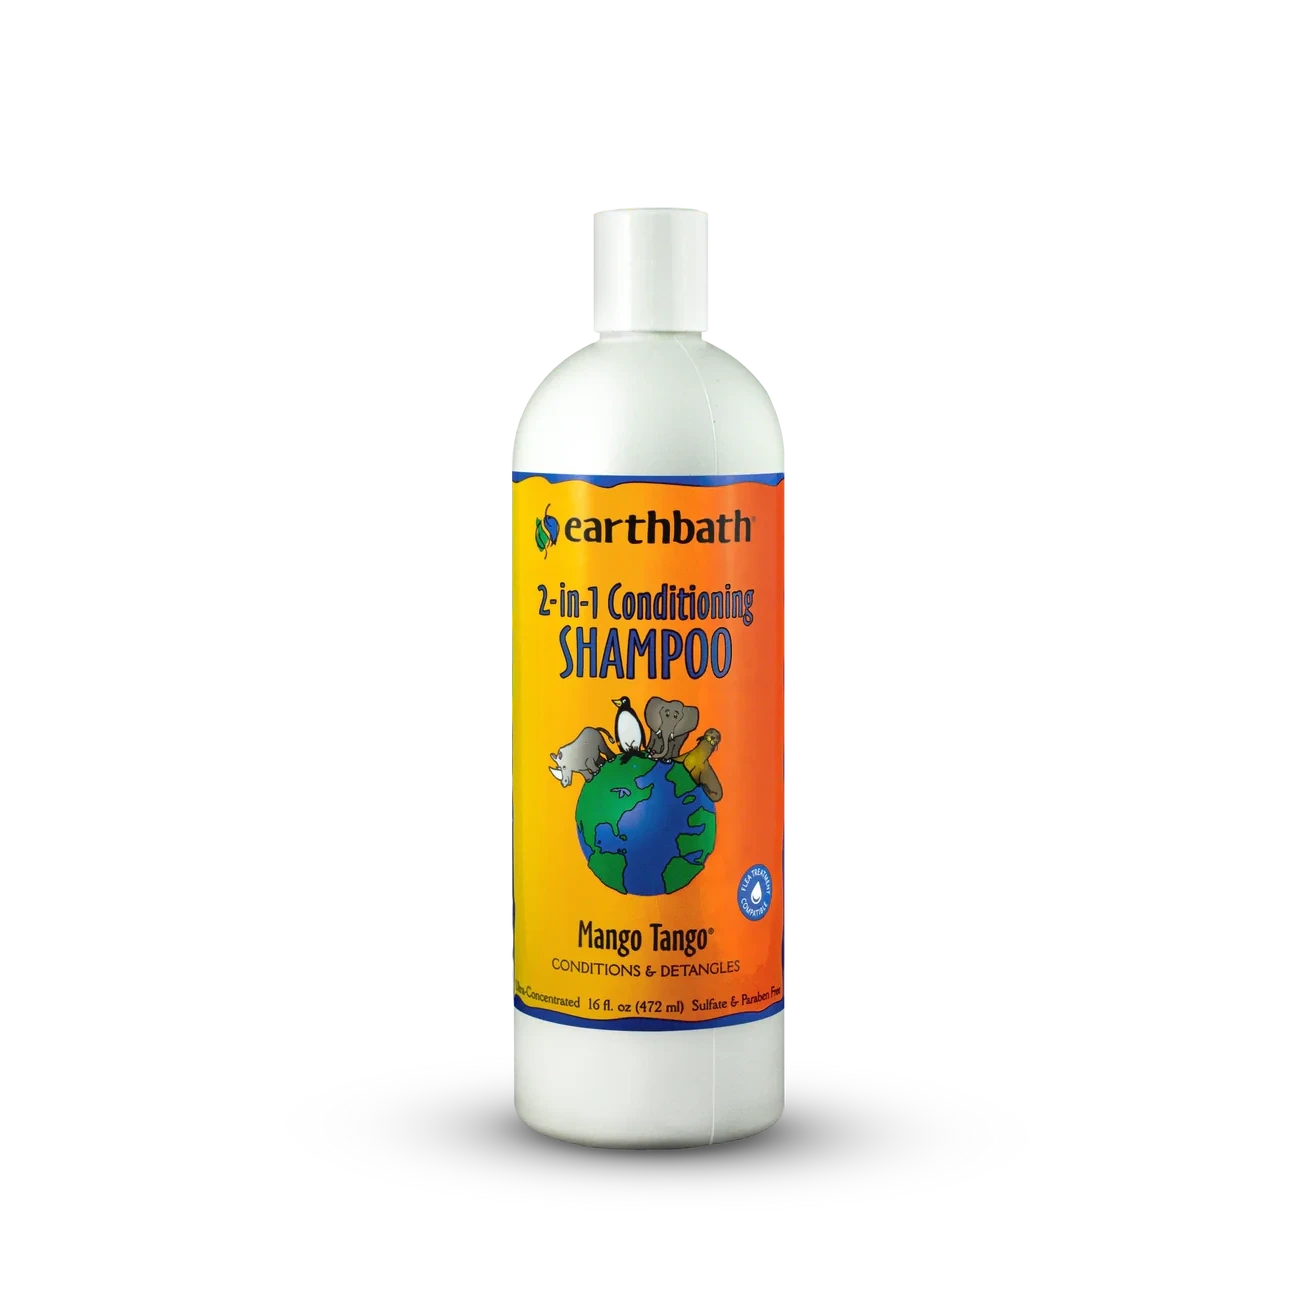 Earthbath - 2-in-1 Conditioning Shampoo 16oz